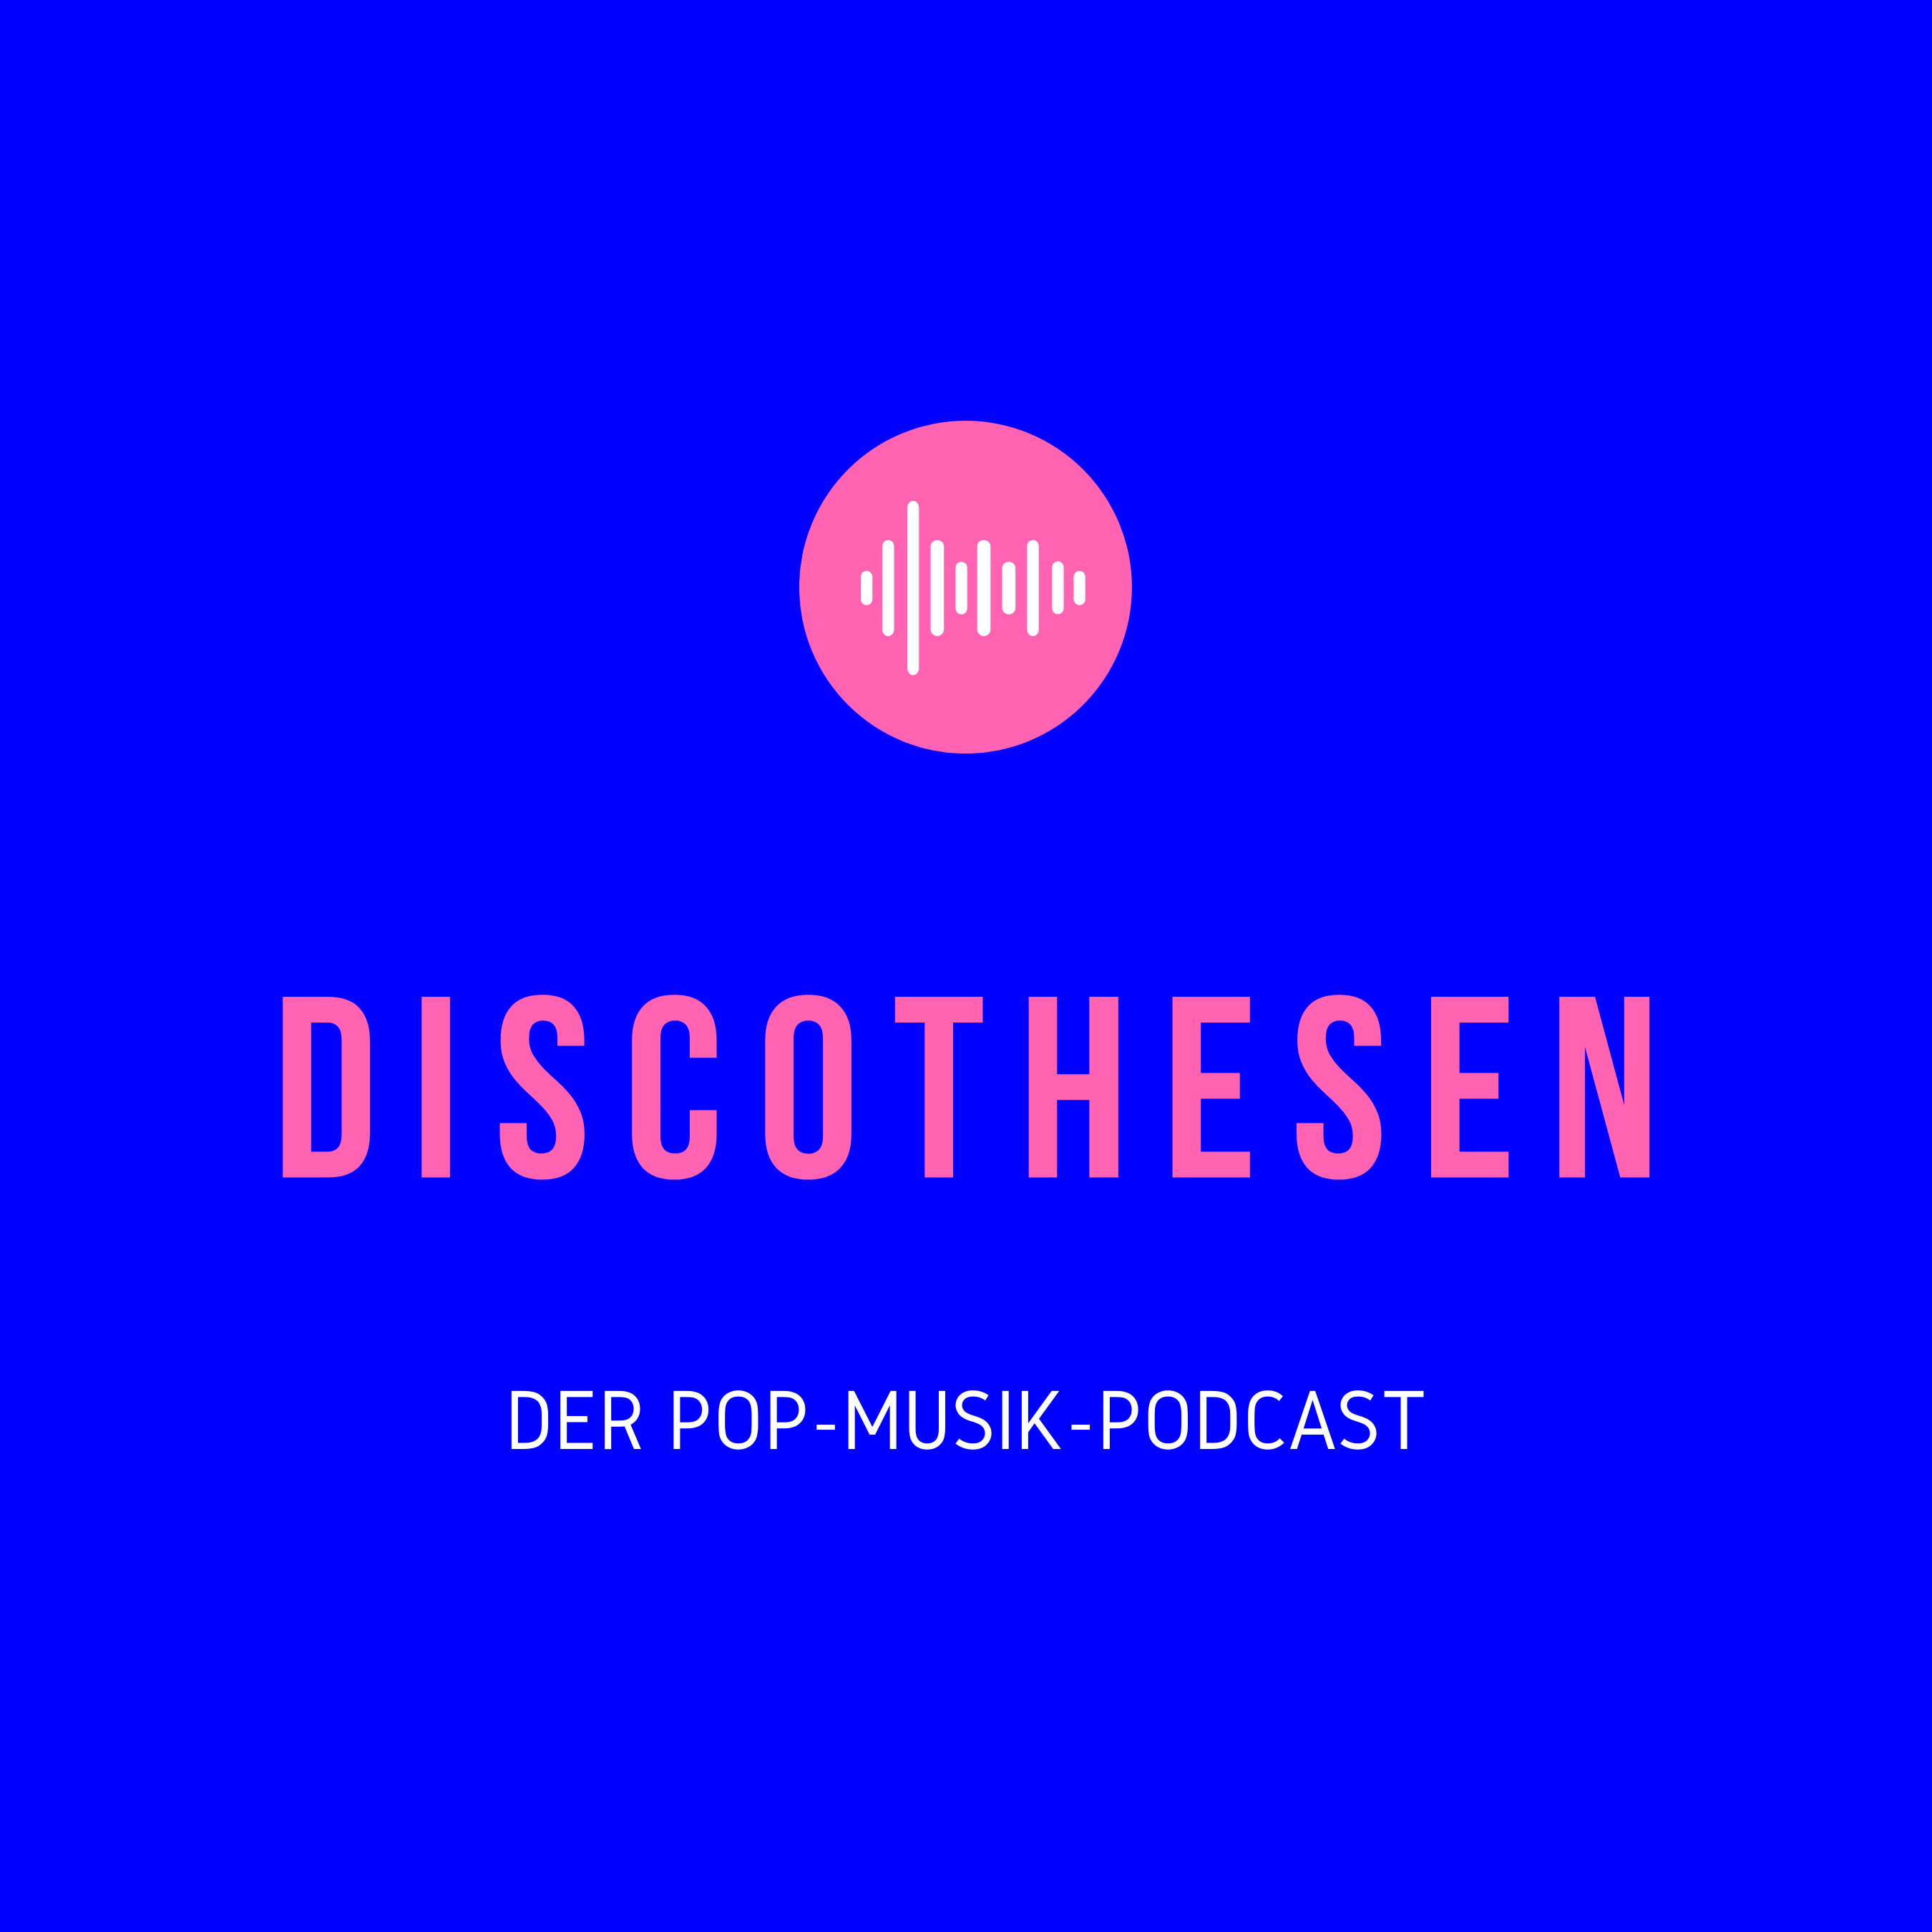 Discothesen - Der Pop-Musik-Podcast